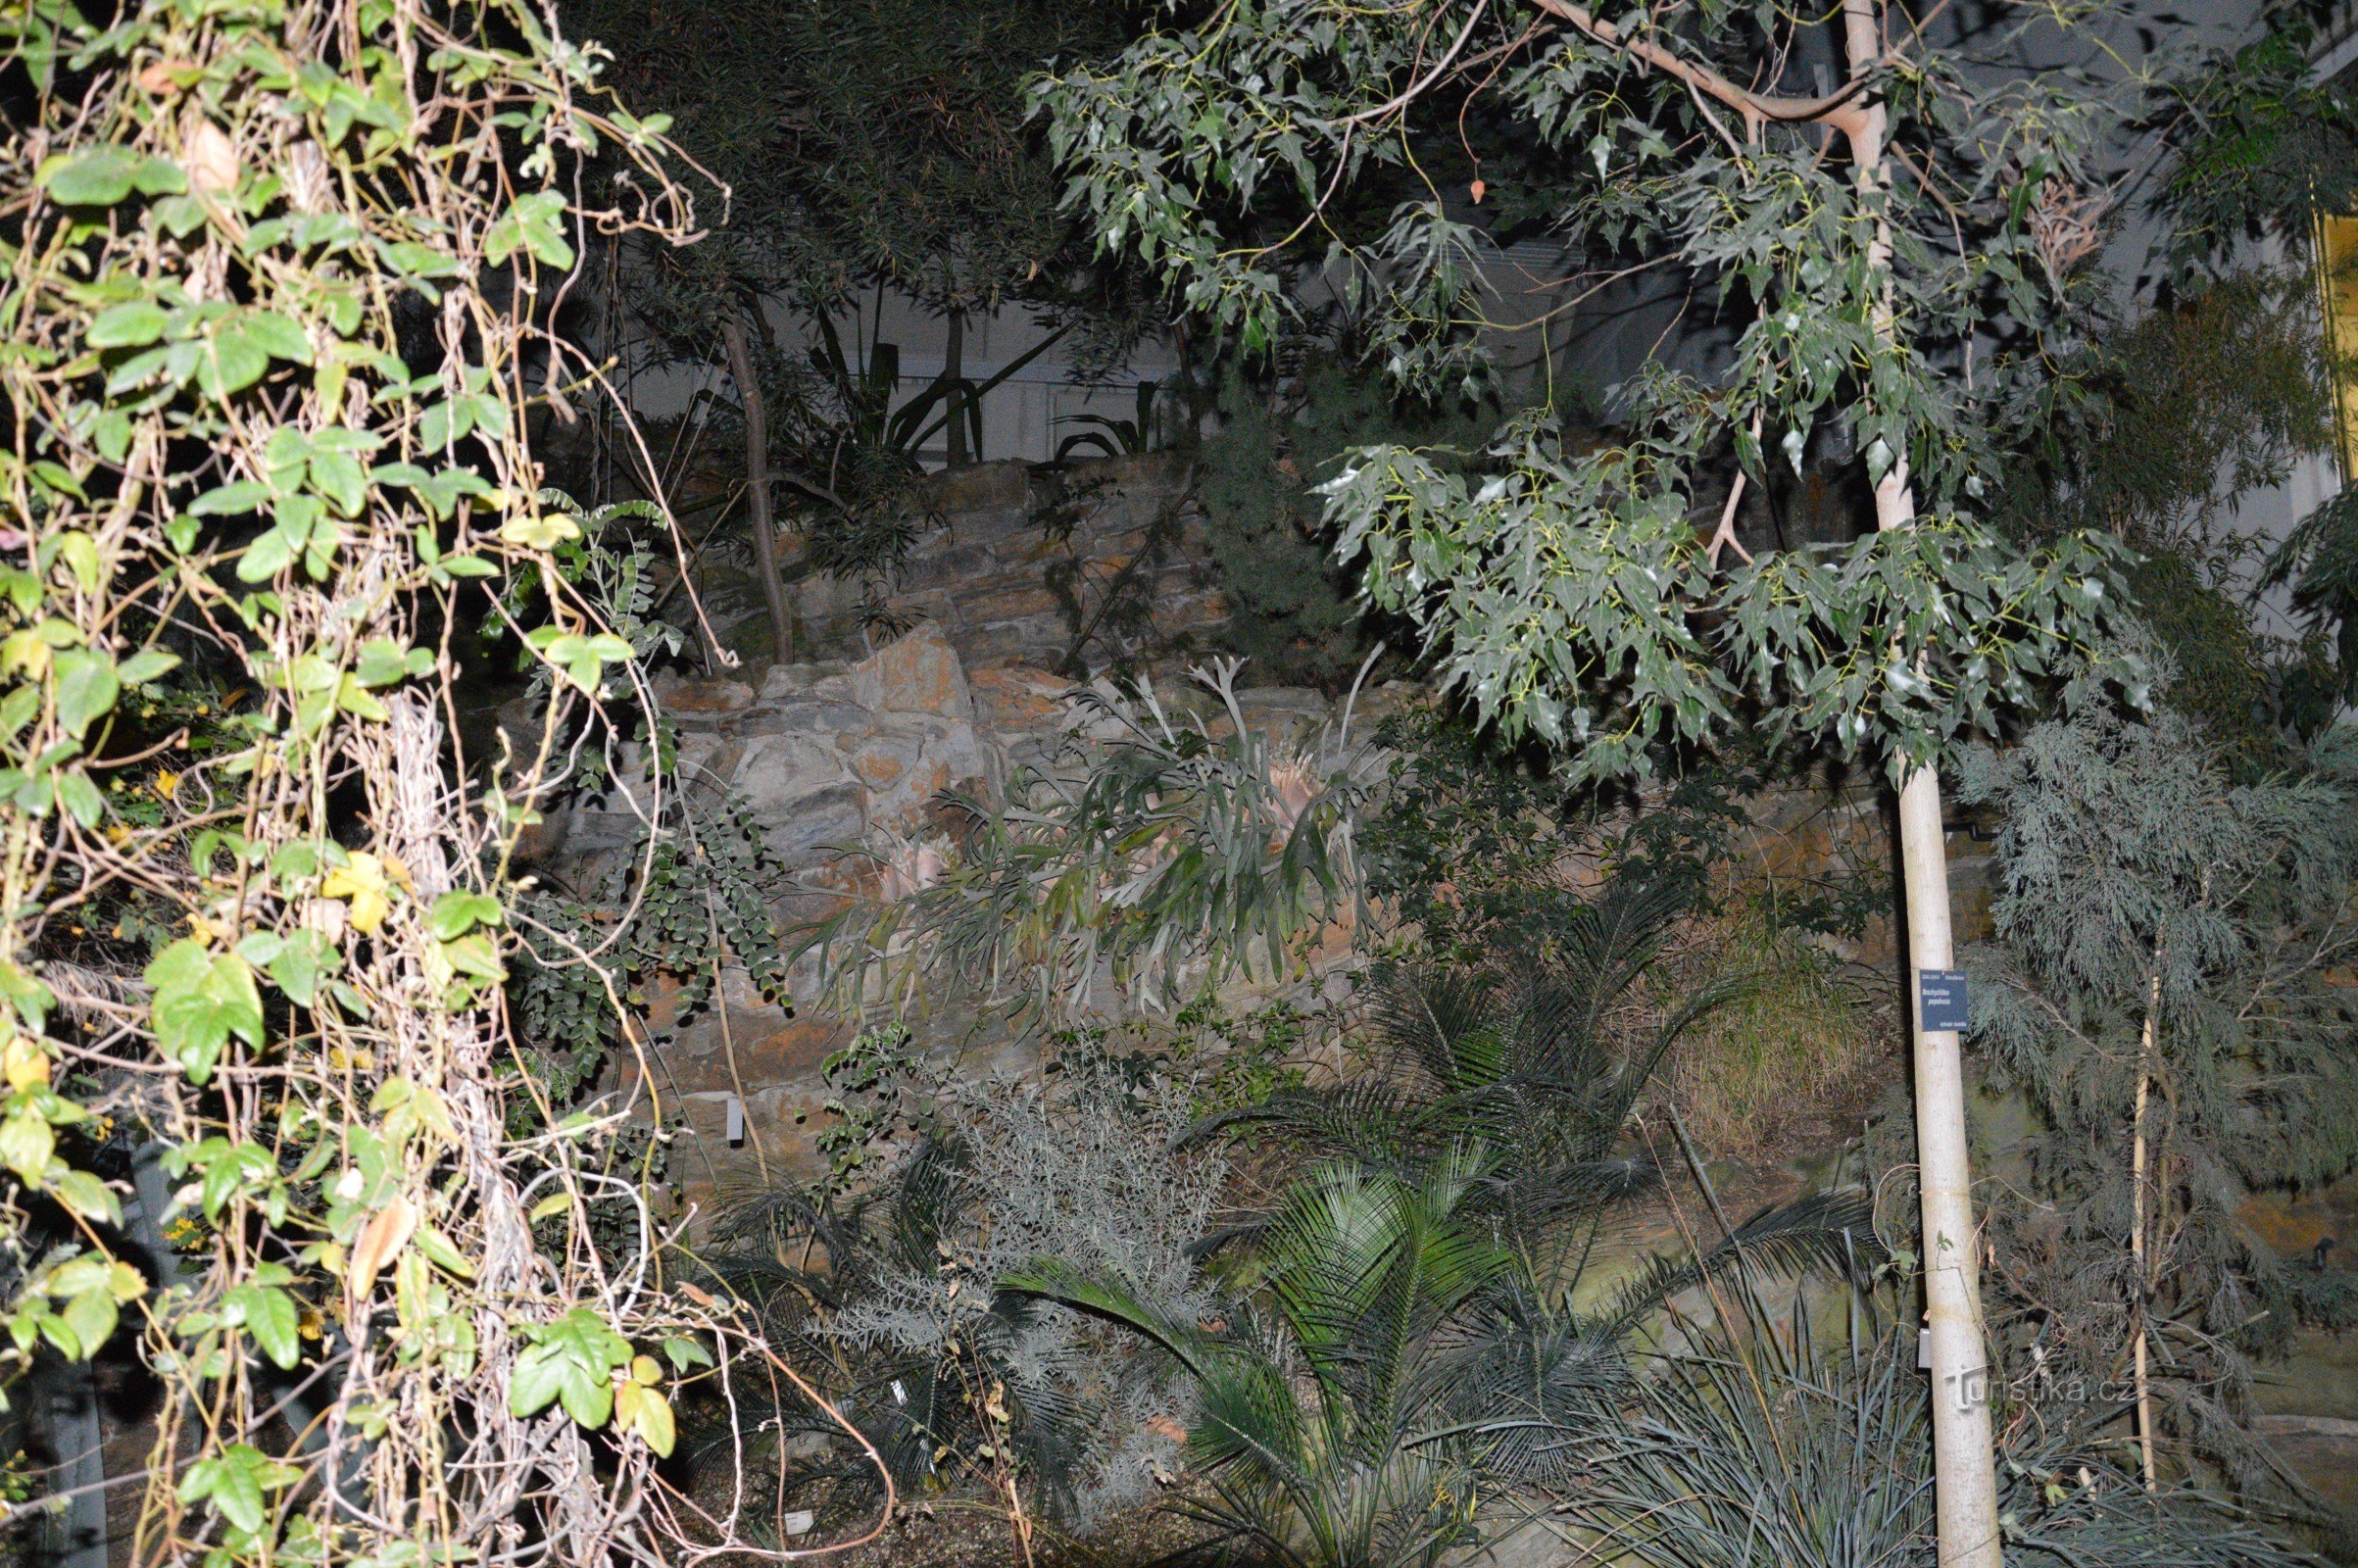 Szklarnia w ogrodzie botanicznym Fata morgana nocą